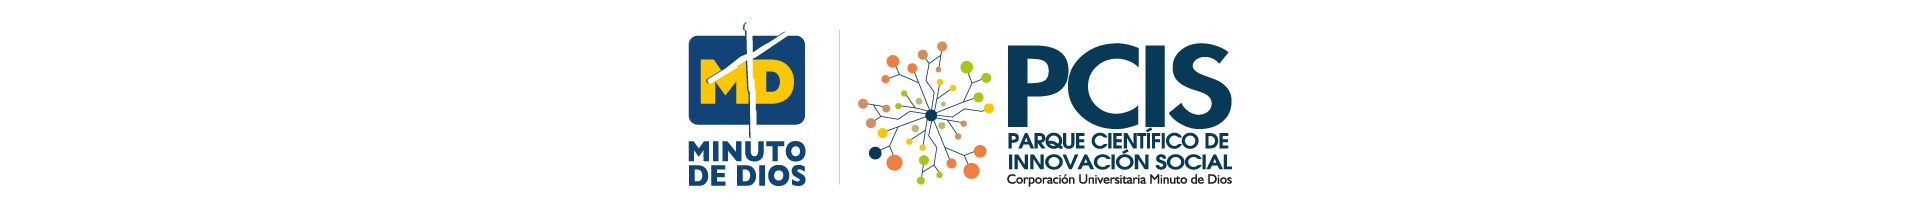 Logo Parque Científico de Innovación Social - PCIS